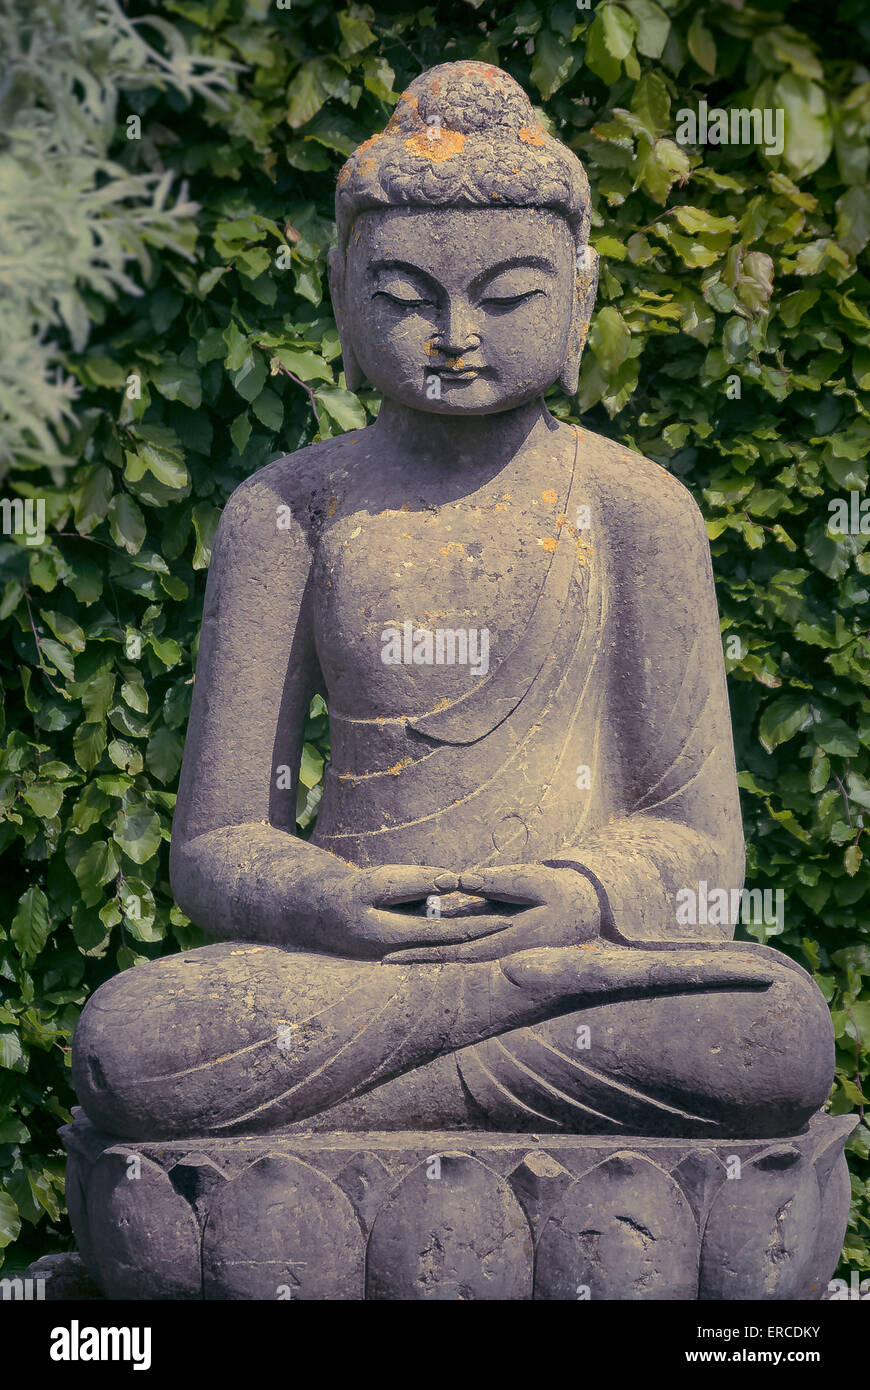 Estatua de Buda en el jardín Foto de stock